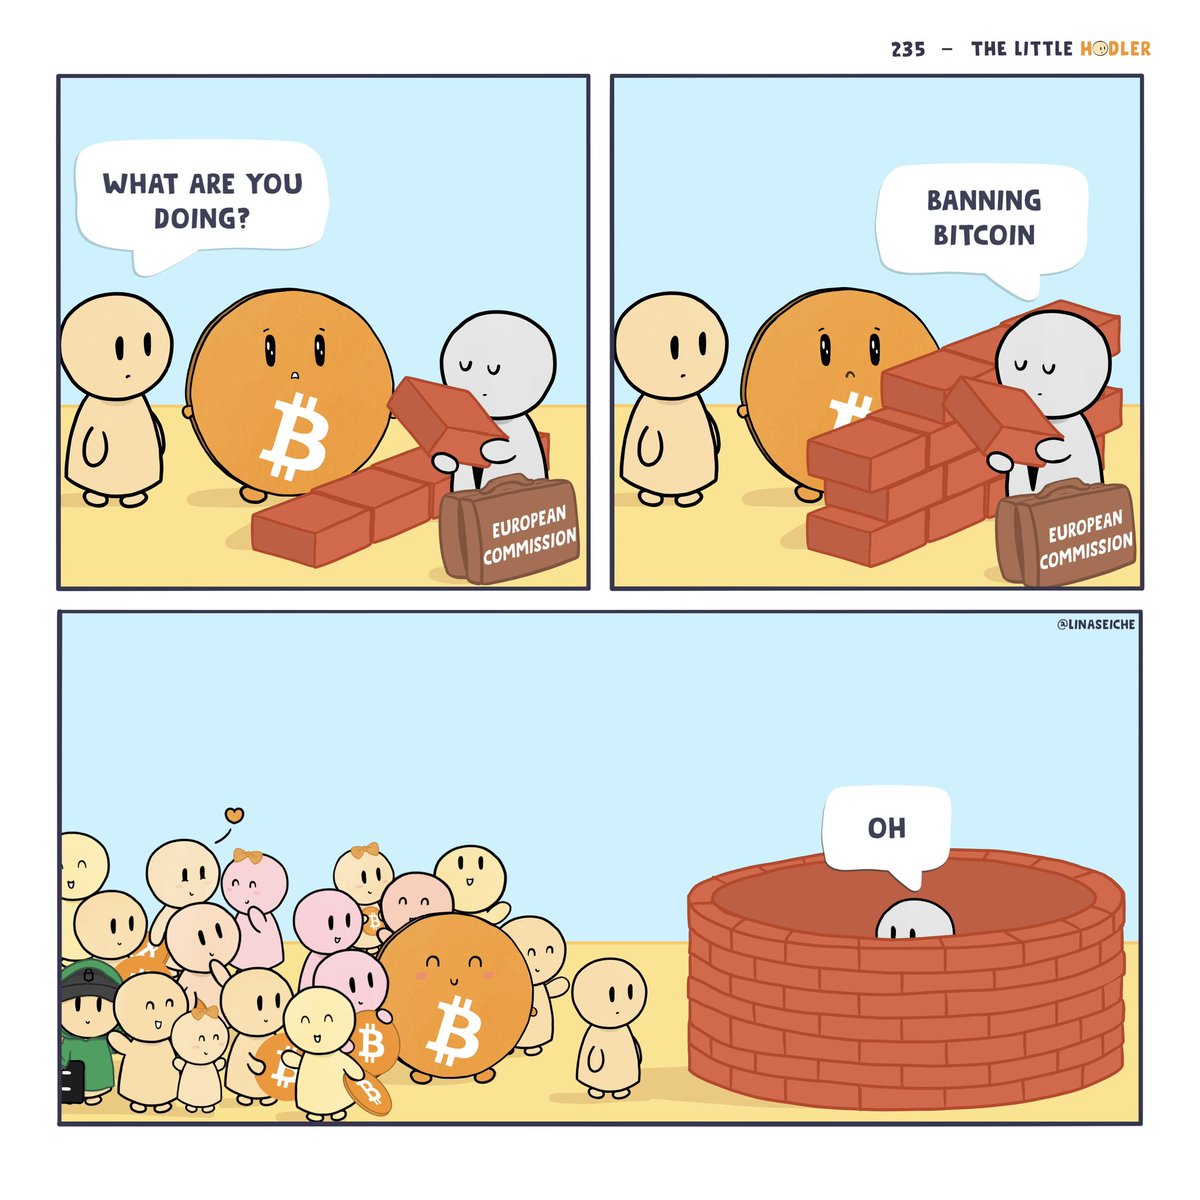 Banning #Bitcoin